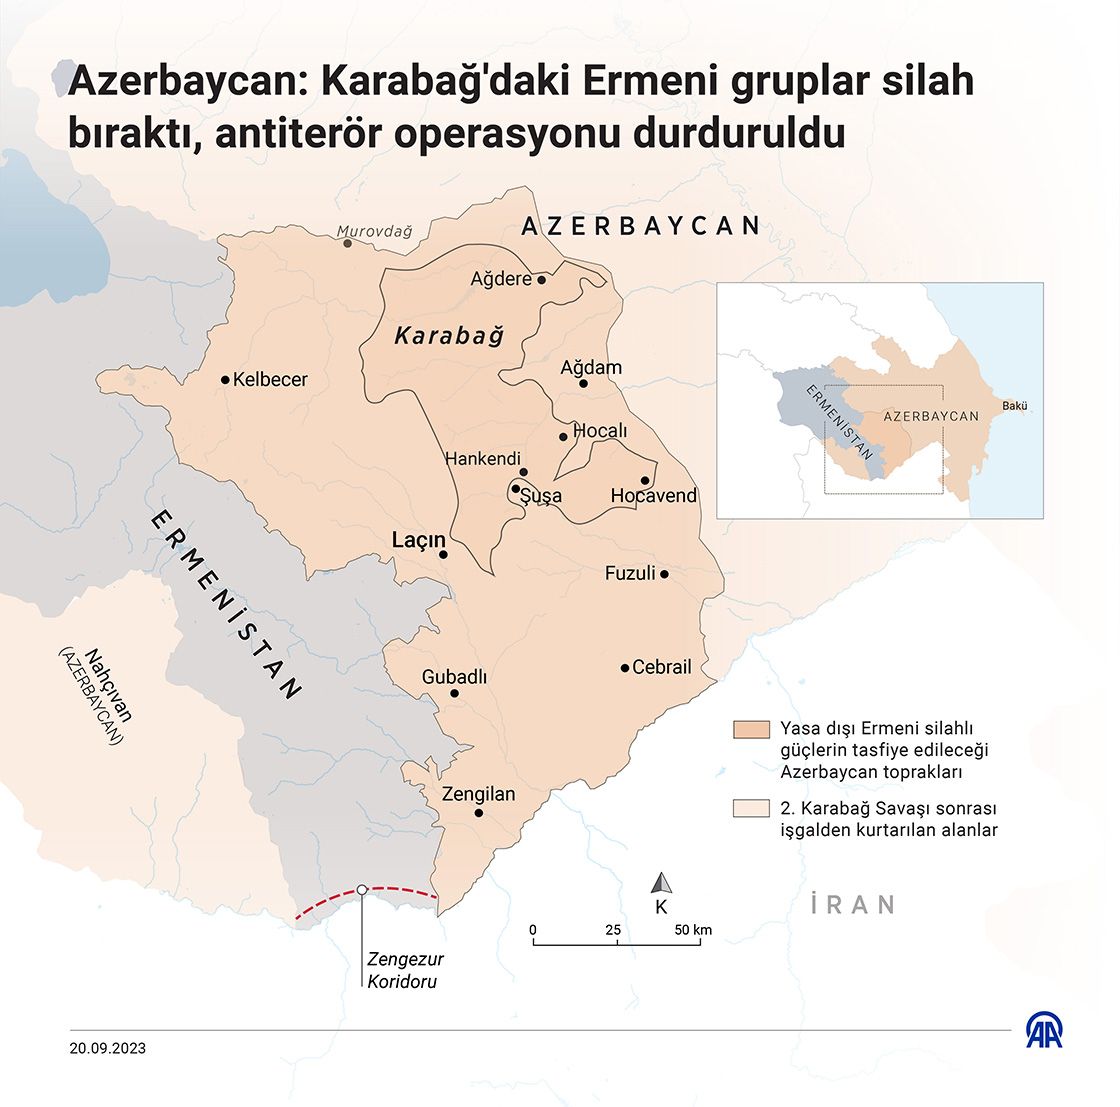 Azerbaycan: Karabağ'daki Ermeni gruplar silah bıraktı, antiterör operasyonu durduruldu